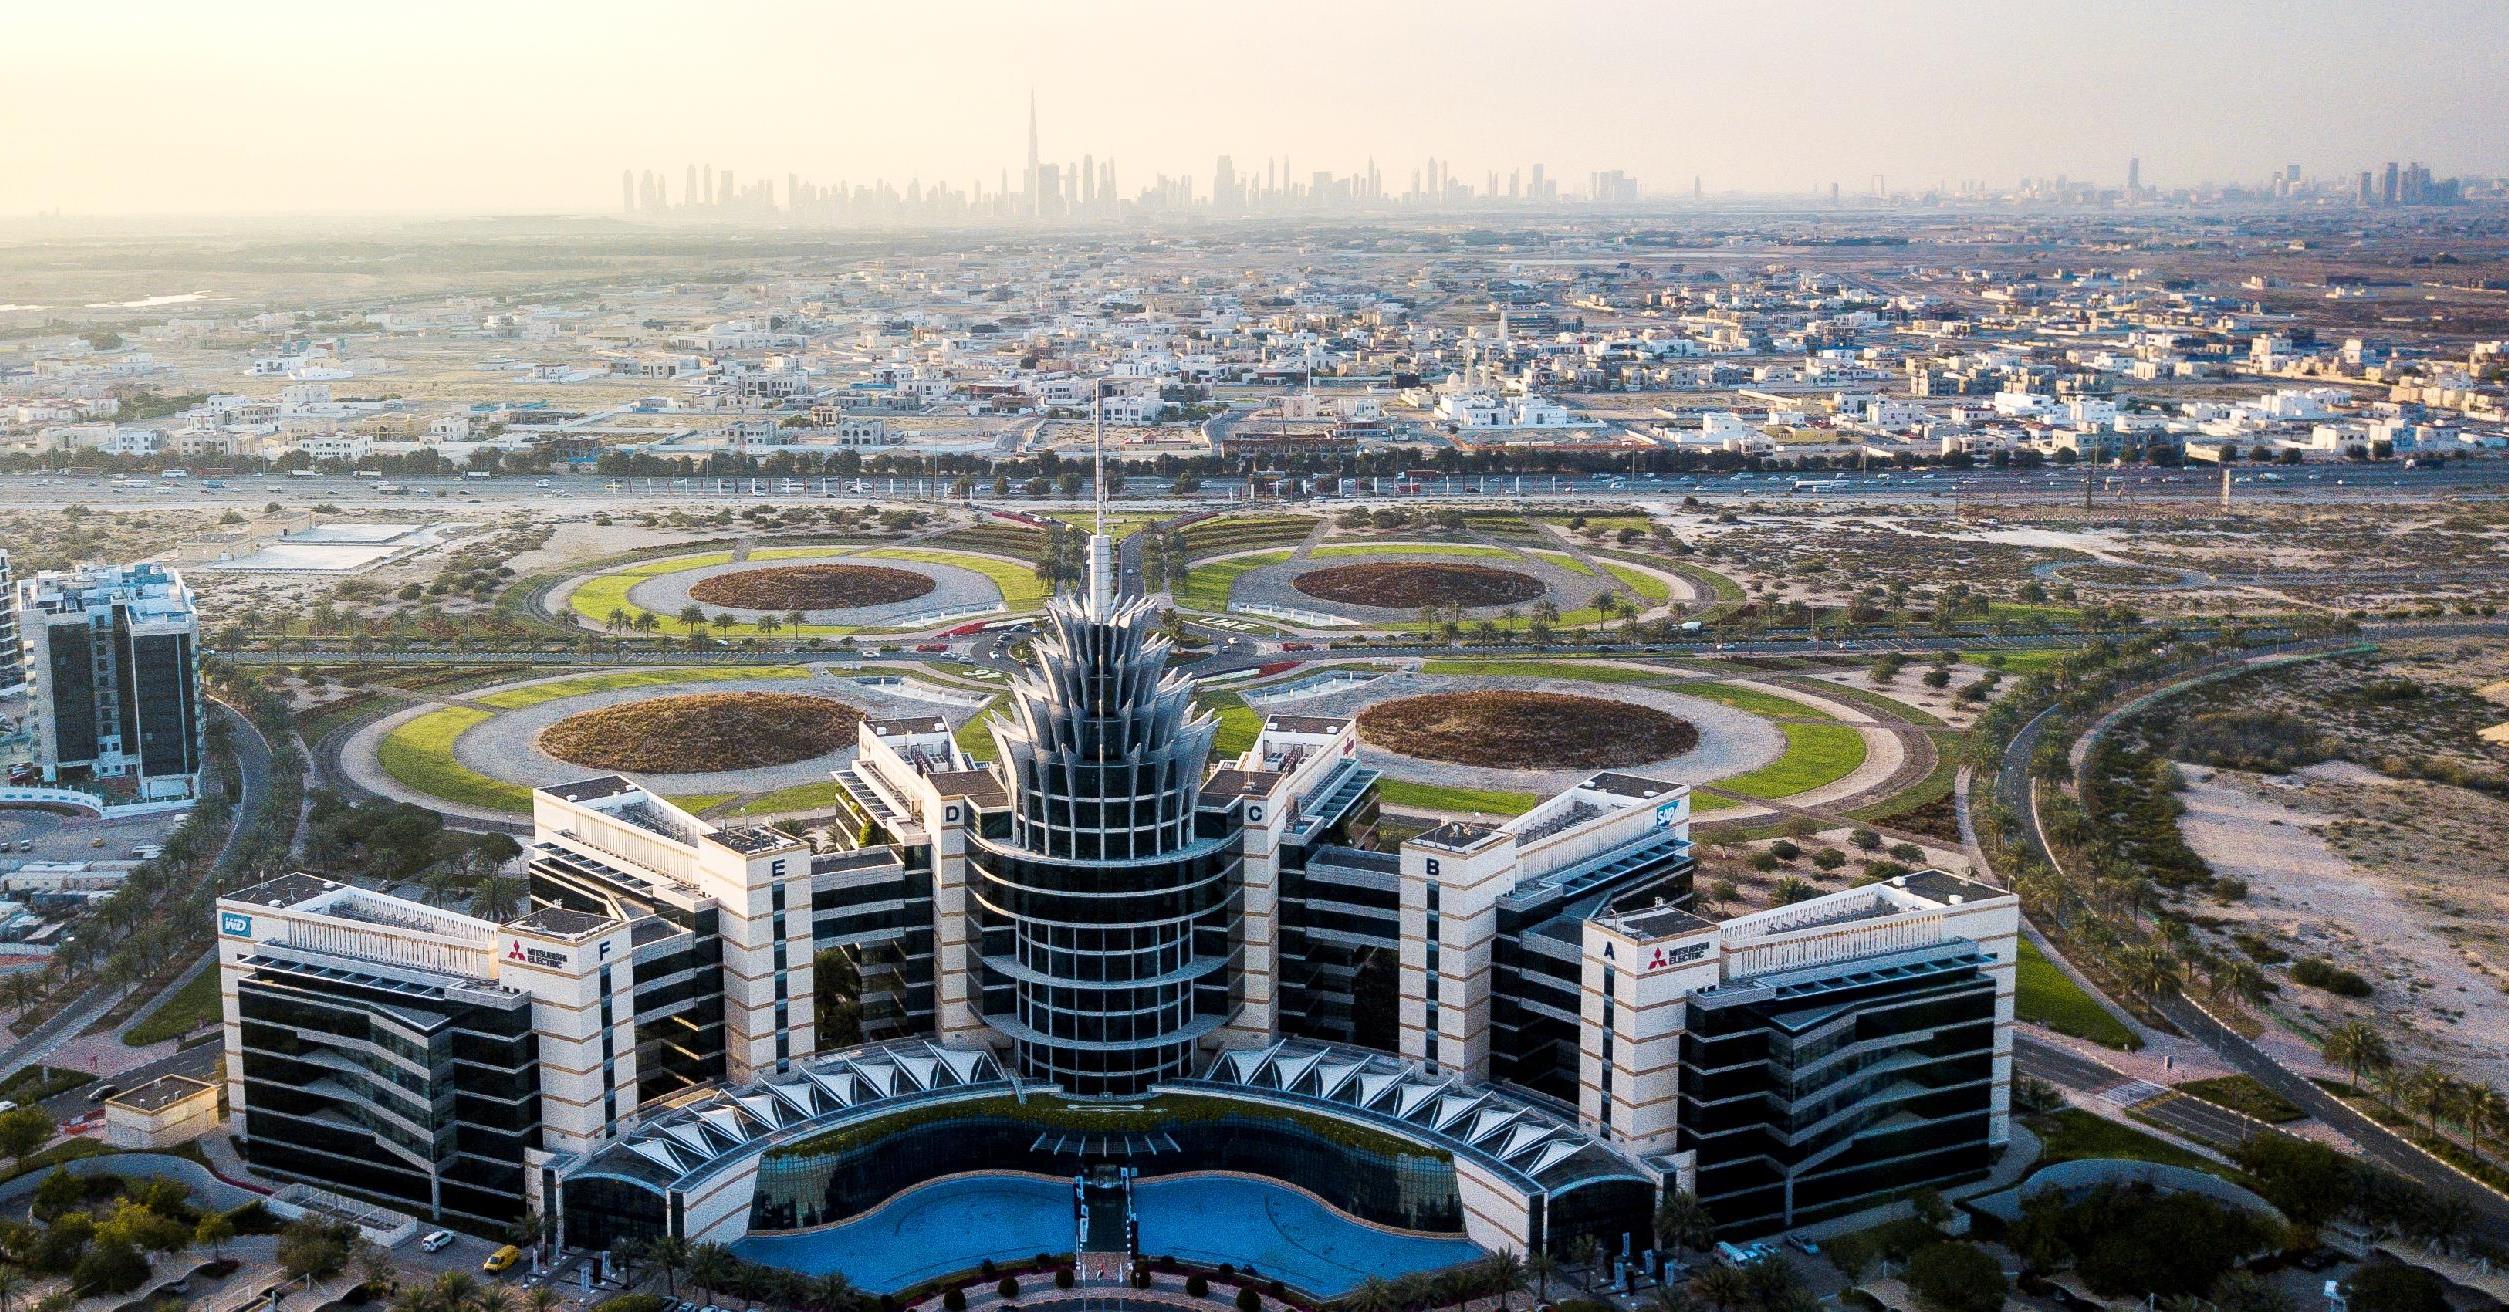 Dubai Silicon Oasis Authority